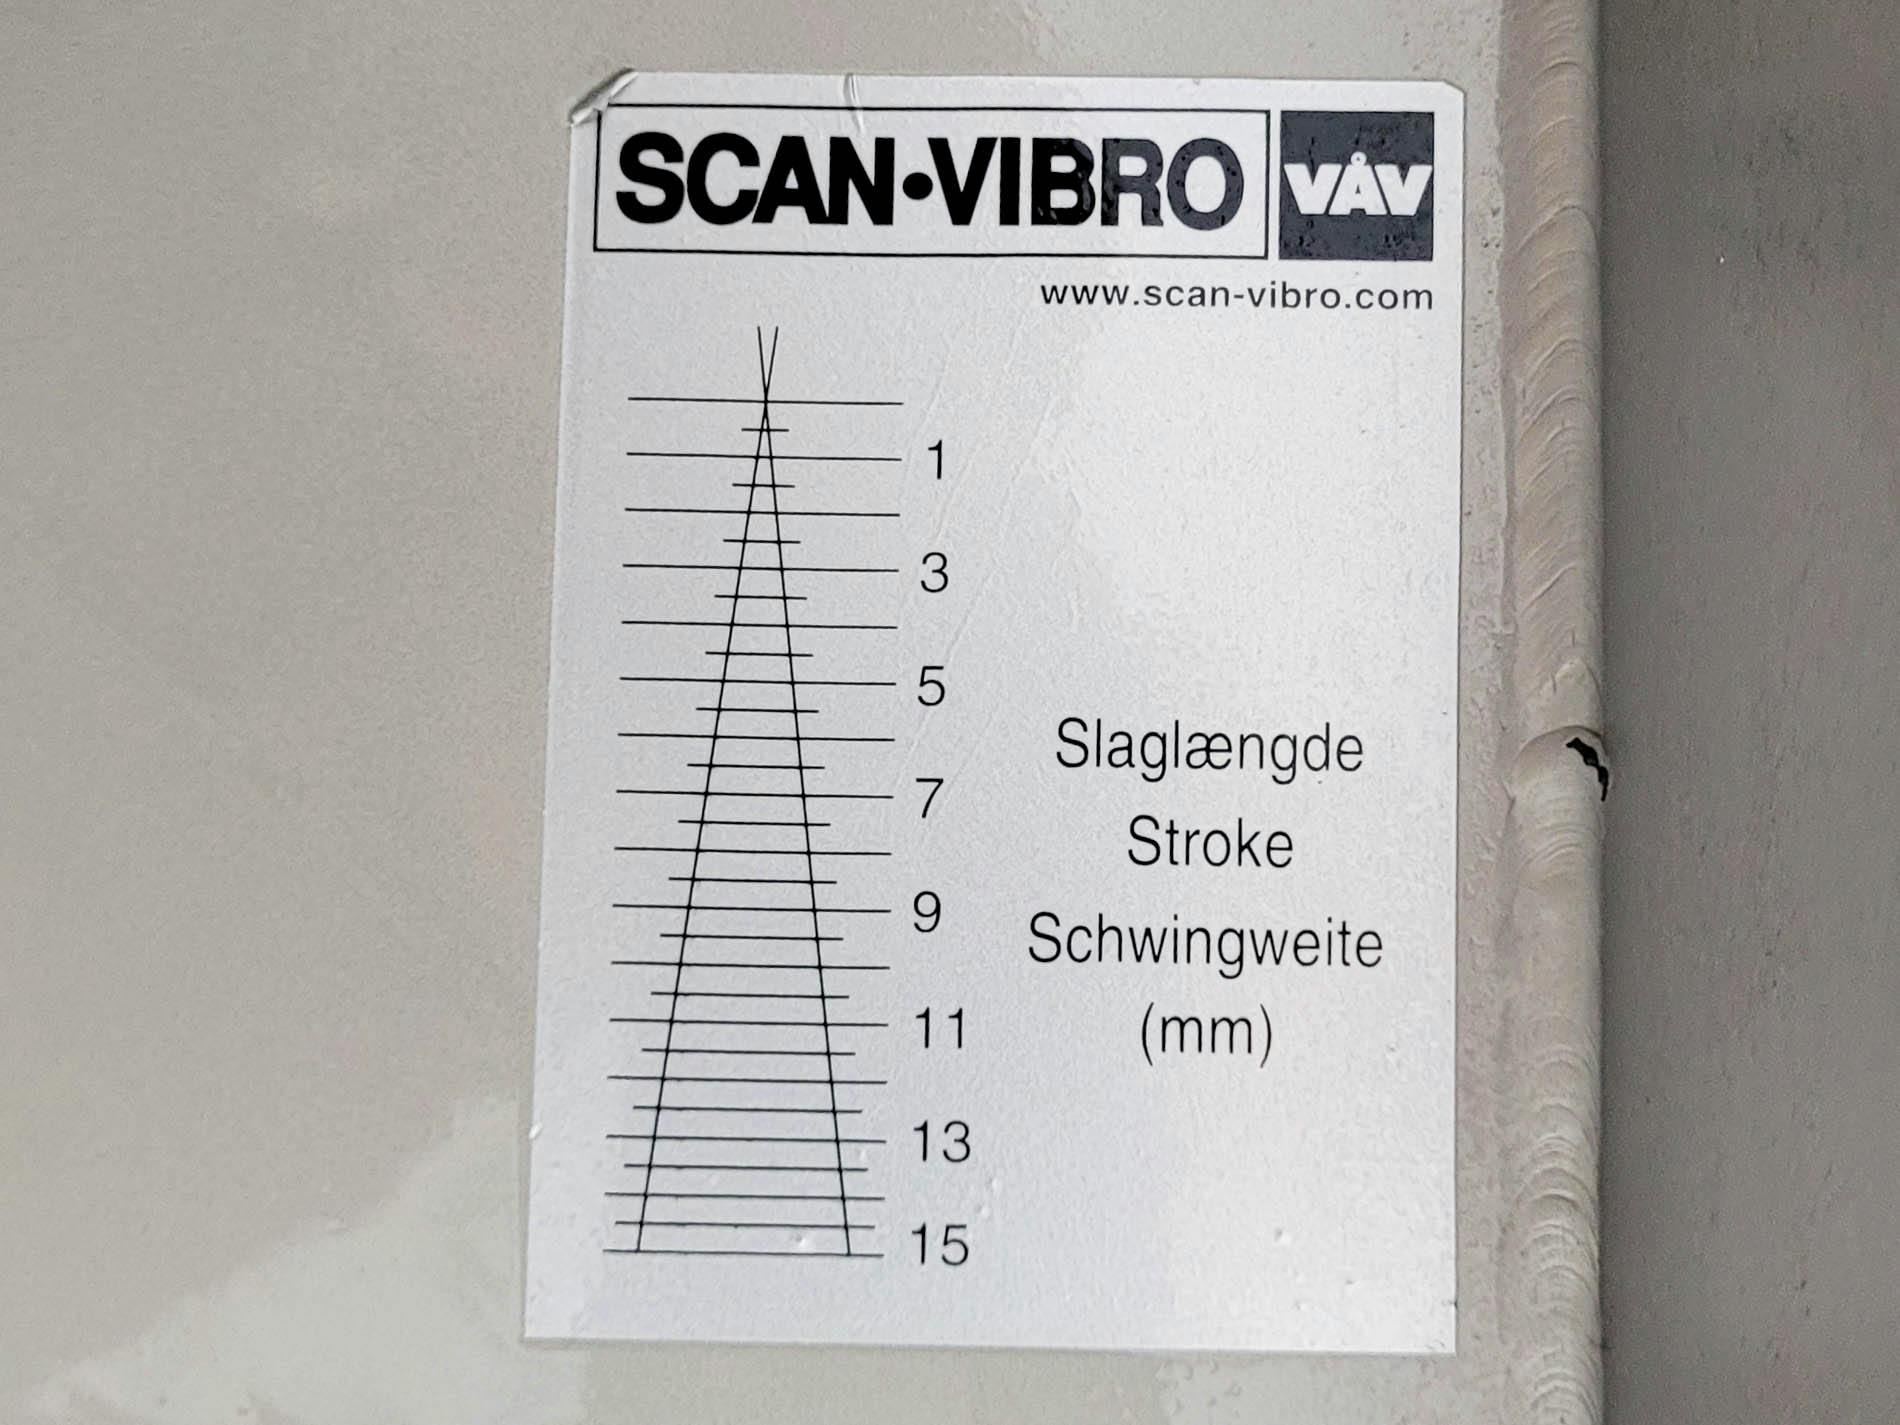 VAV Scan-Vibro TRS 300 x 1019 - Alimentatore a vibrazione - image 15